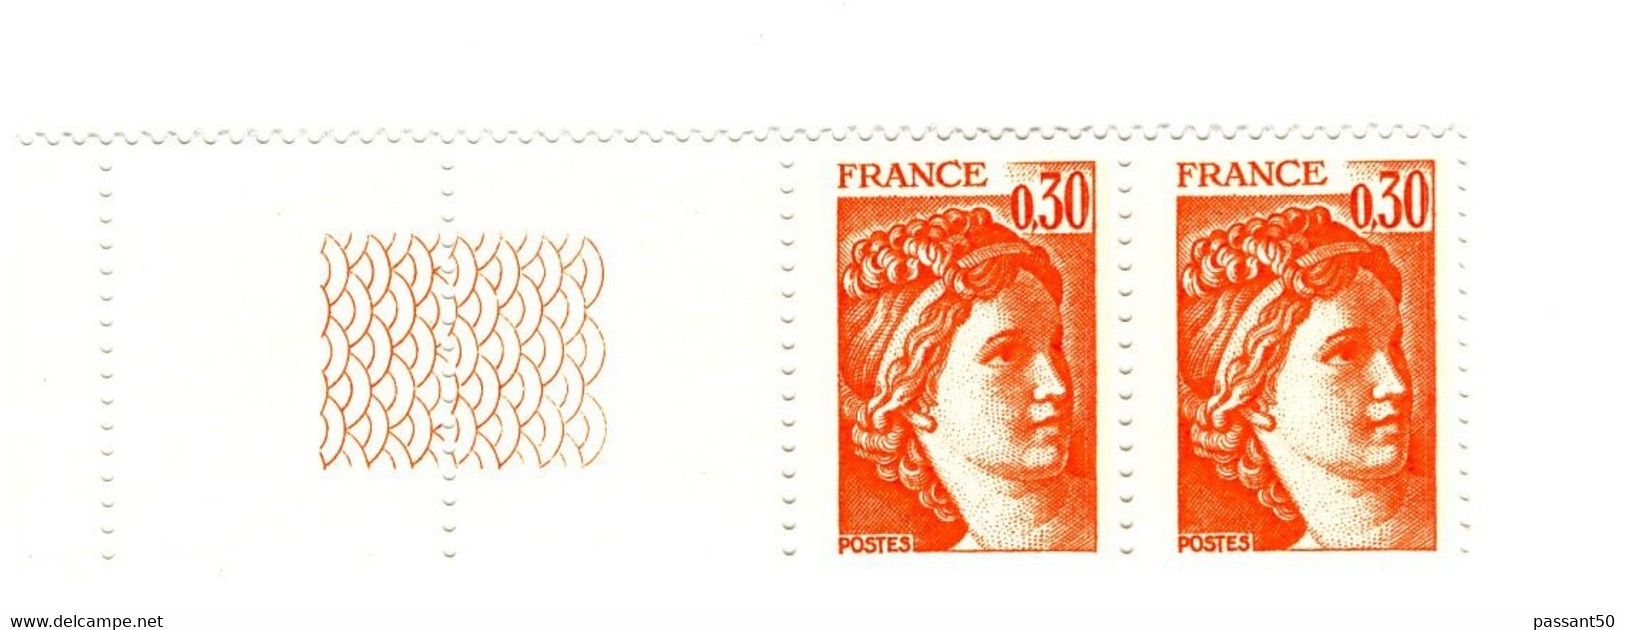 Sabine 0.30fr Orange YT 1968g En Paire Bord De Feuille Guilloché. Superbe Et Pas Courant, Voir Le Scan. Cote YT : 3 €. - Unused Stamps